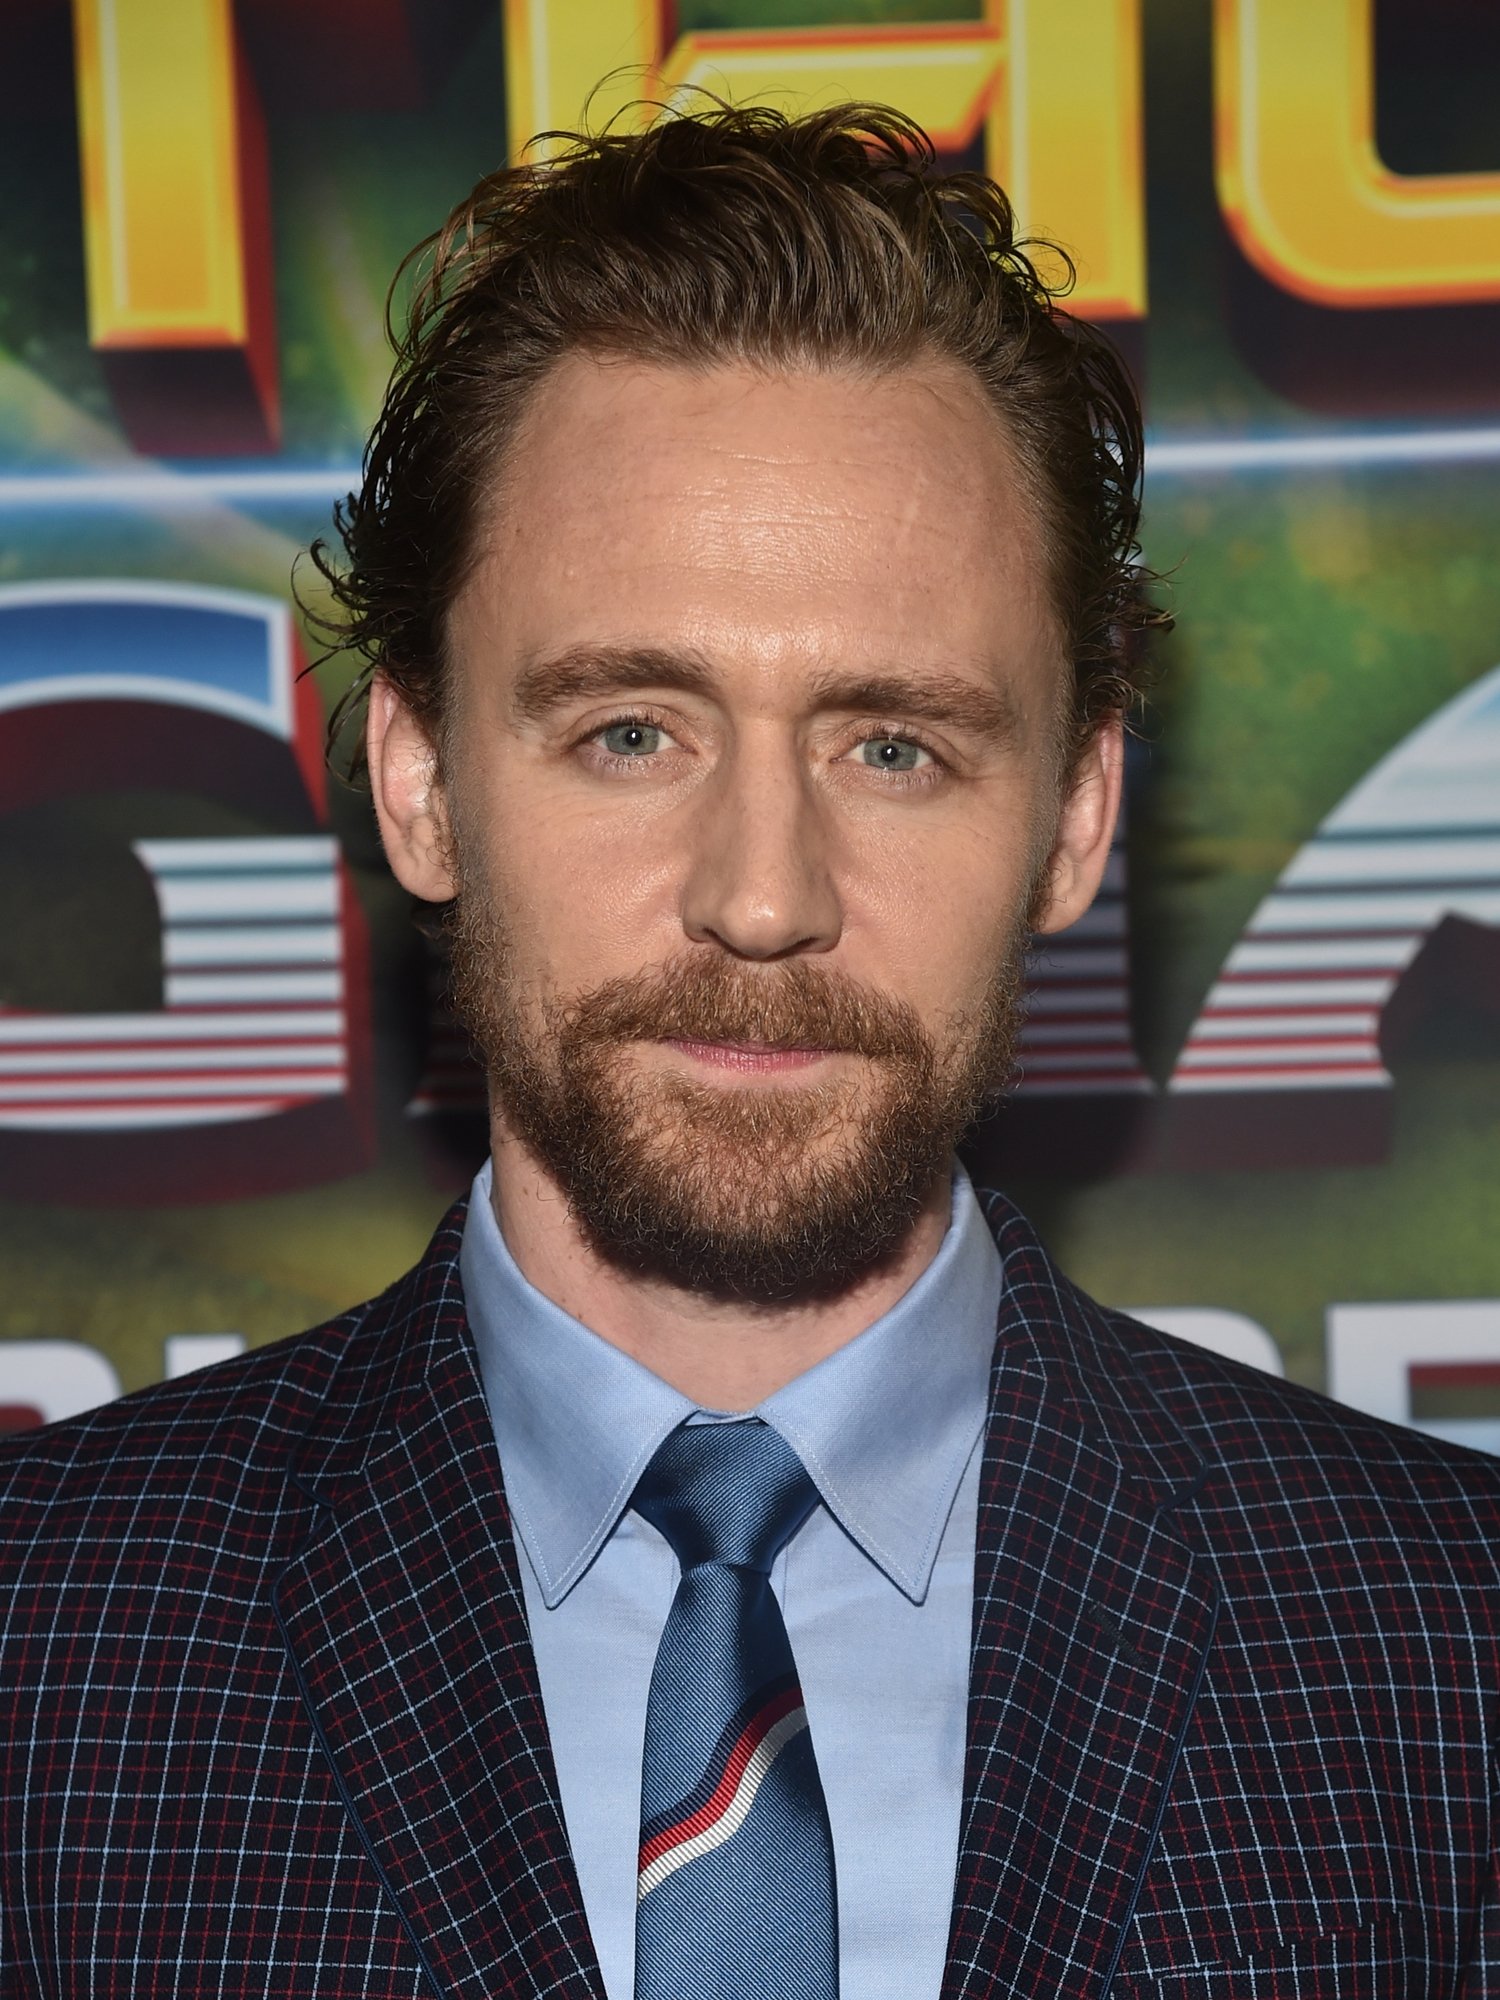 Tom Hiddleston – Wikipédia, a enciclopédia livre